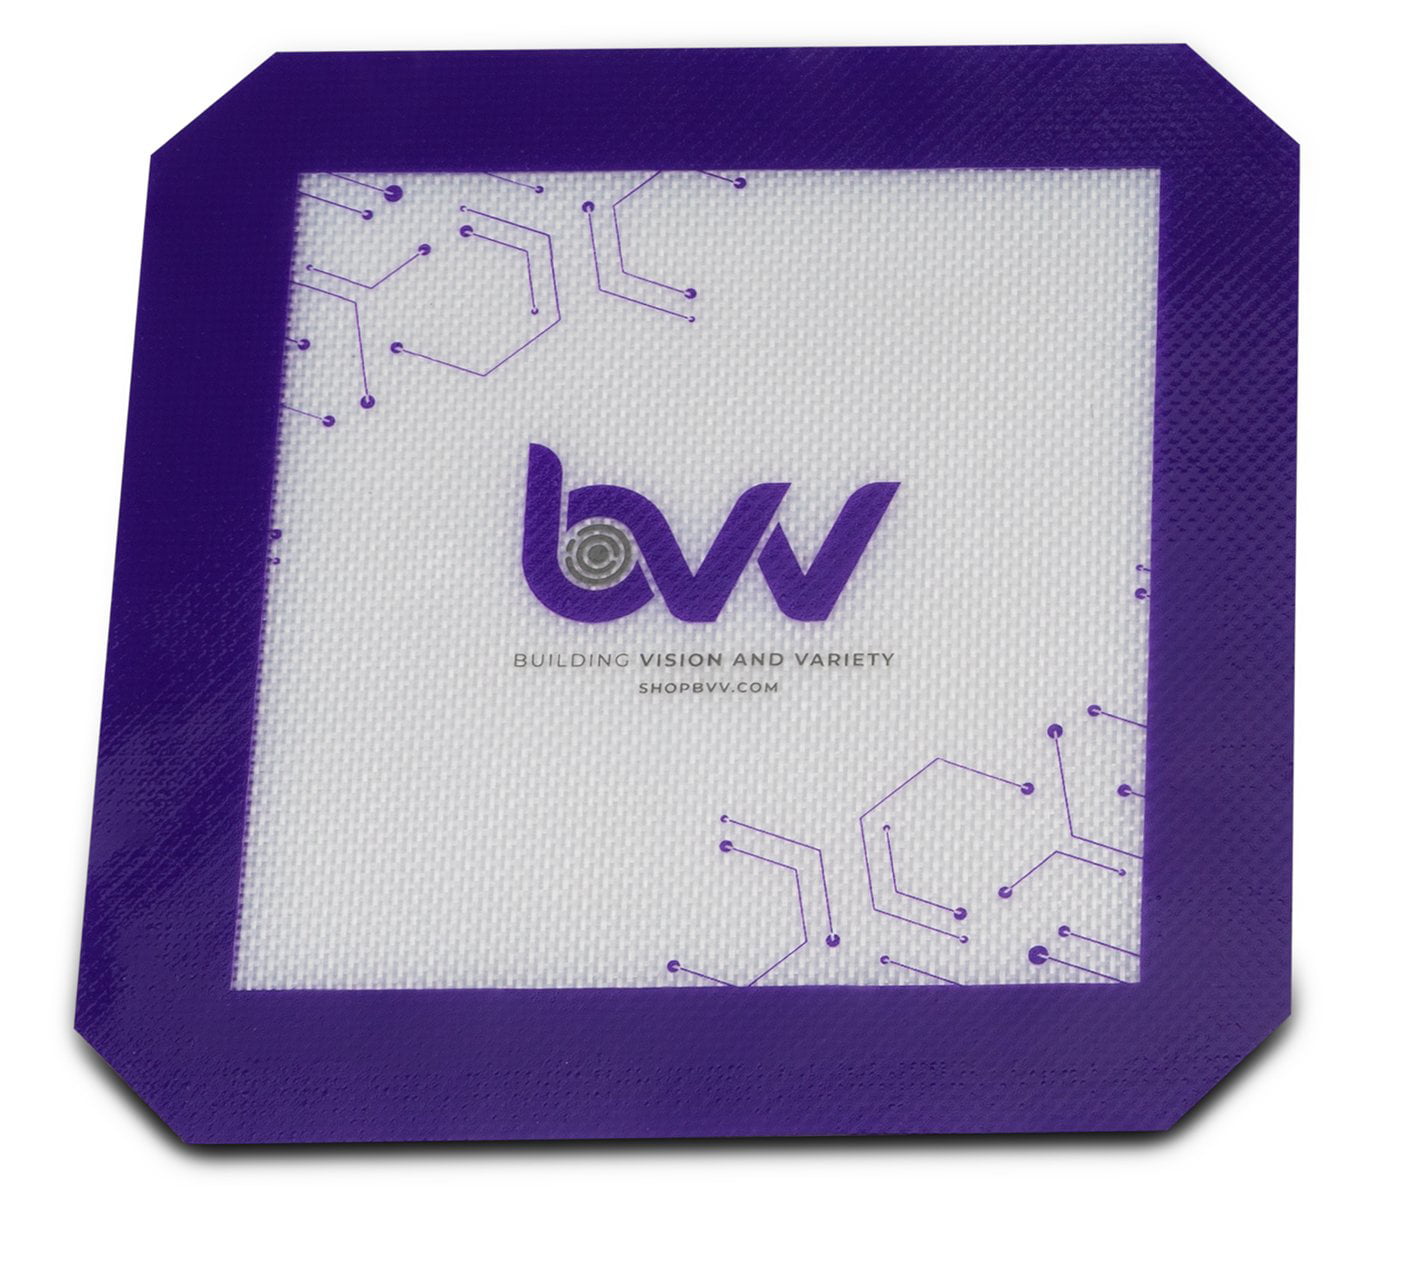 BVV 8" Diameter Platinum Cured Silicone Vac Pad 